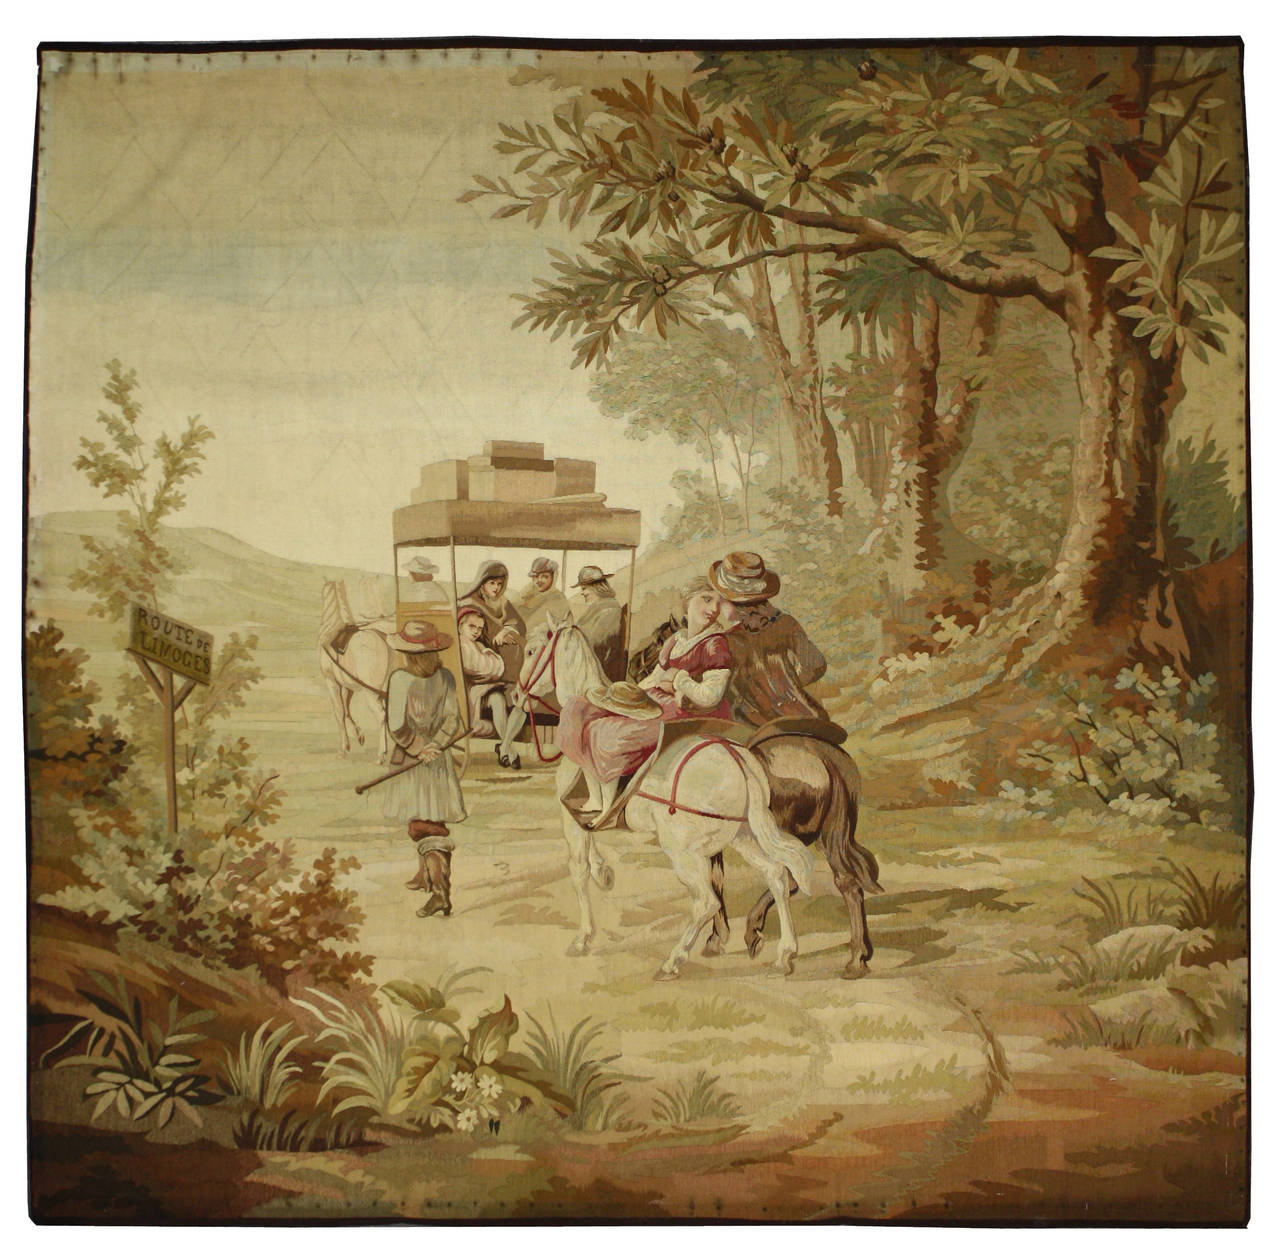 72470 Tapisserie pastorale française ancienne de la fin du 19e siècle Route de Limoges, style Louis XV, tenture murale française rococo. La scène représente une famille se déplaçant en charrette tirée par des chevaux sur leur chemin via la route de